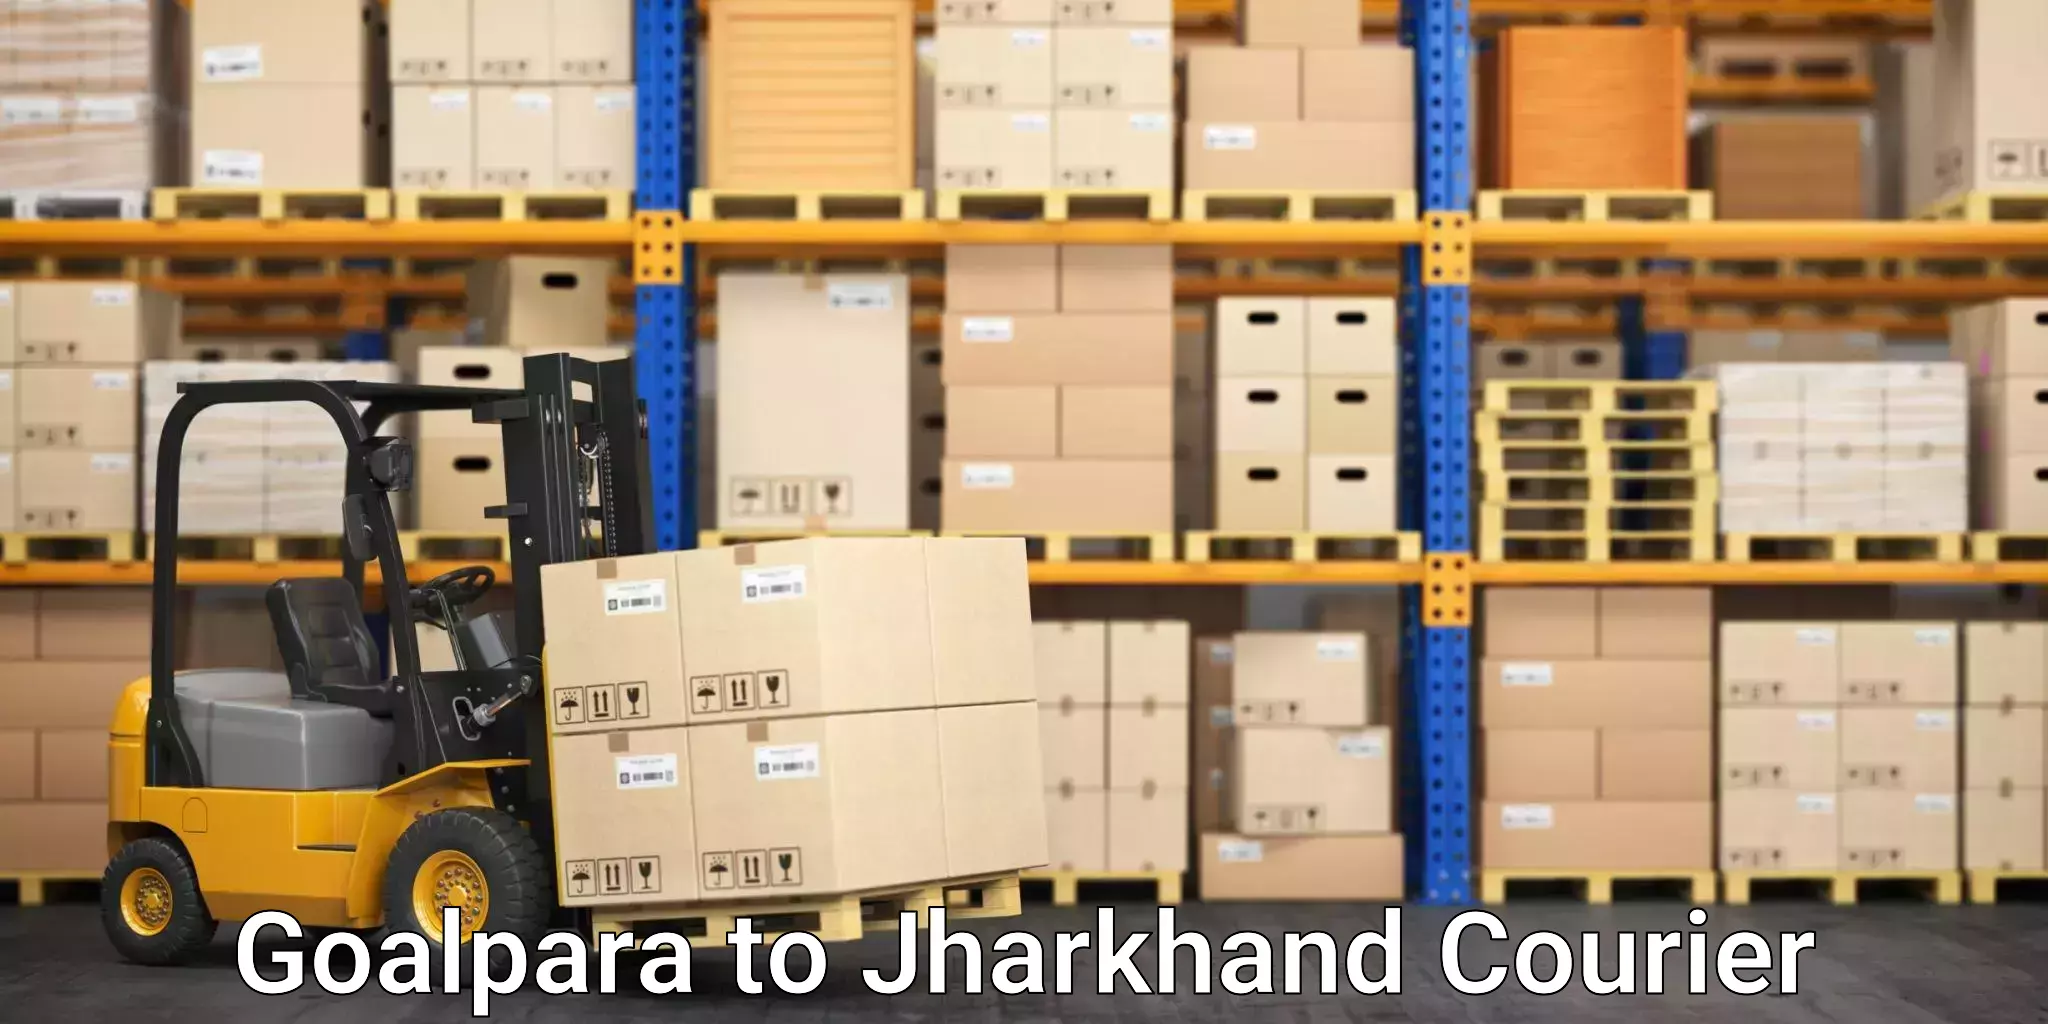 Smart parcel tracking Goalpara to Chandankiyari